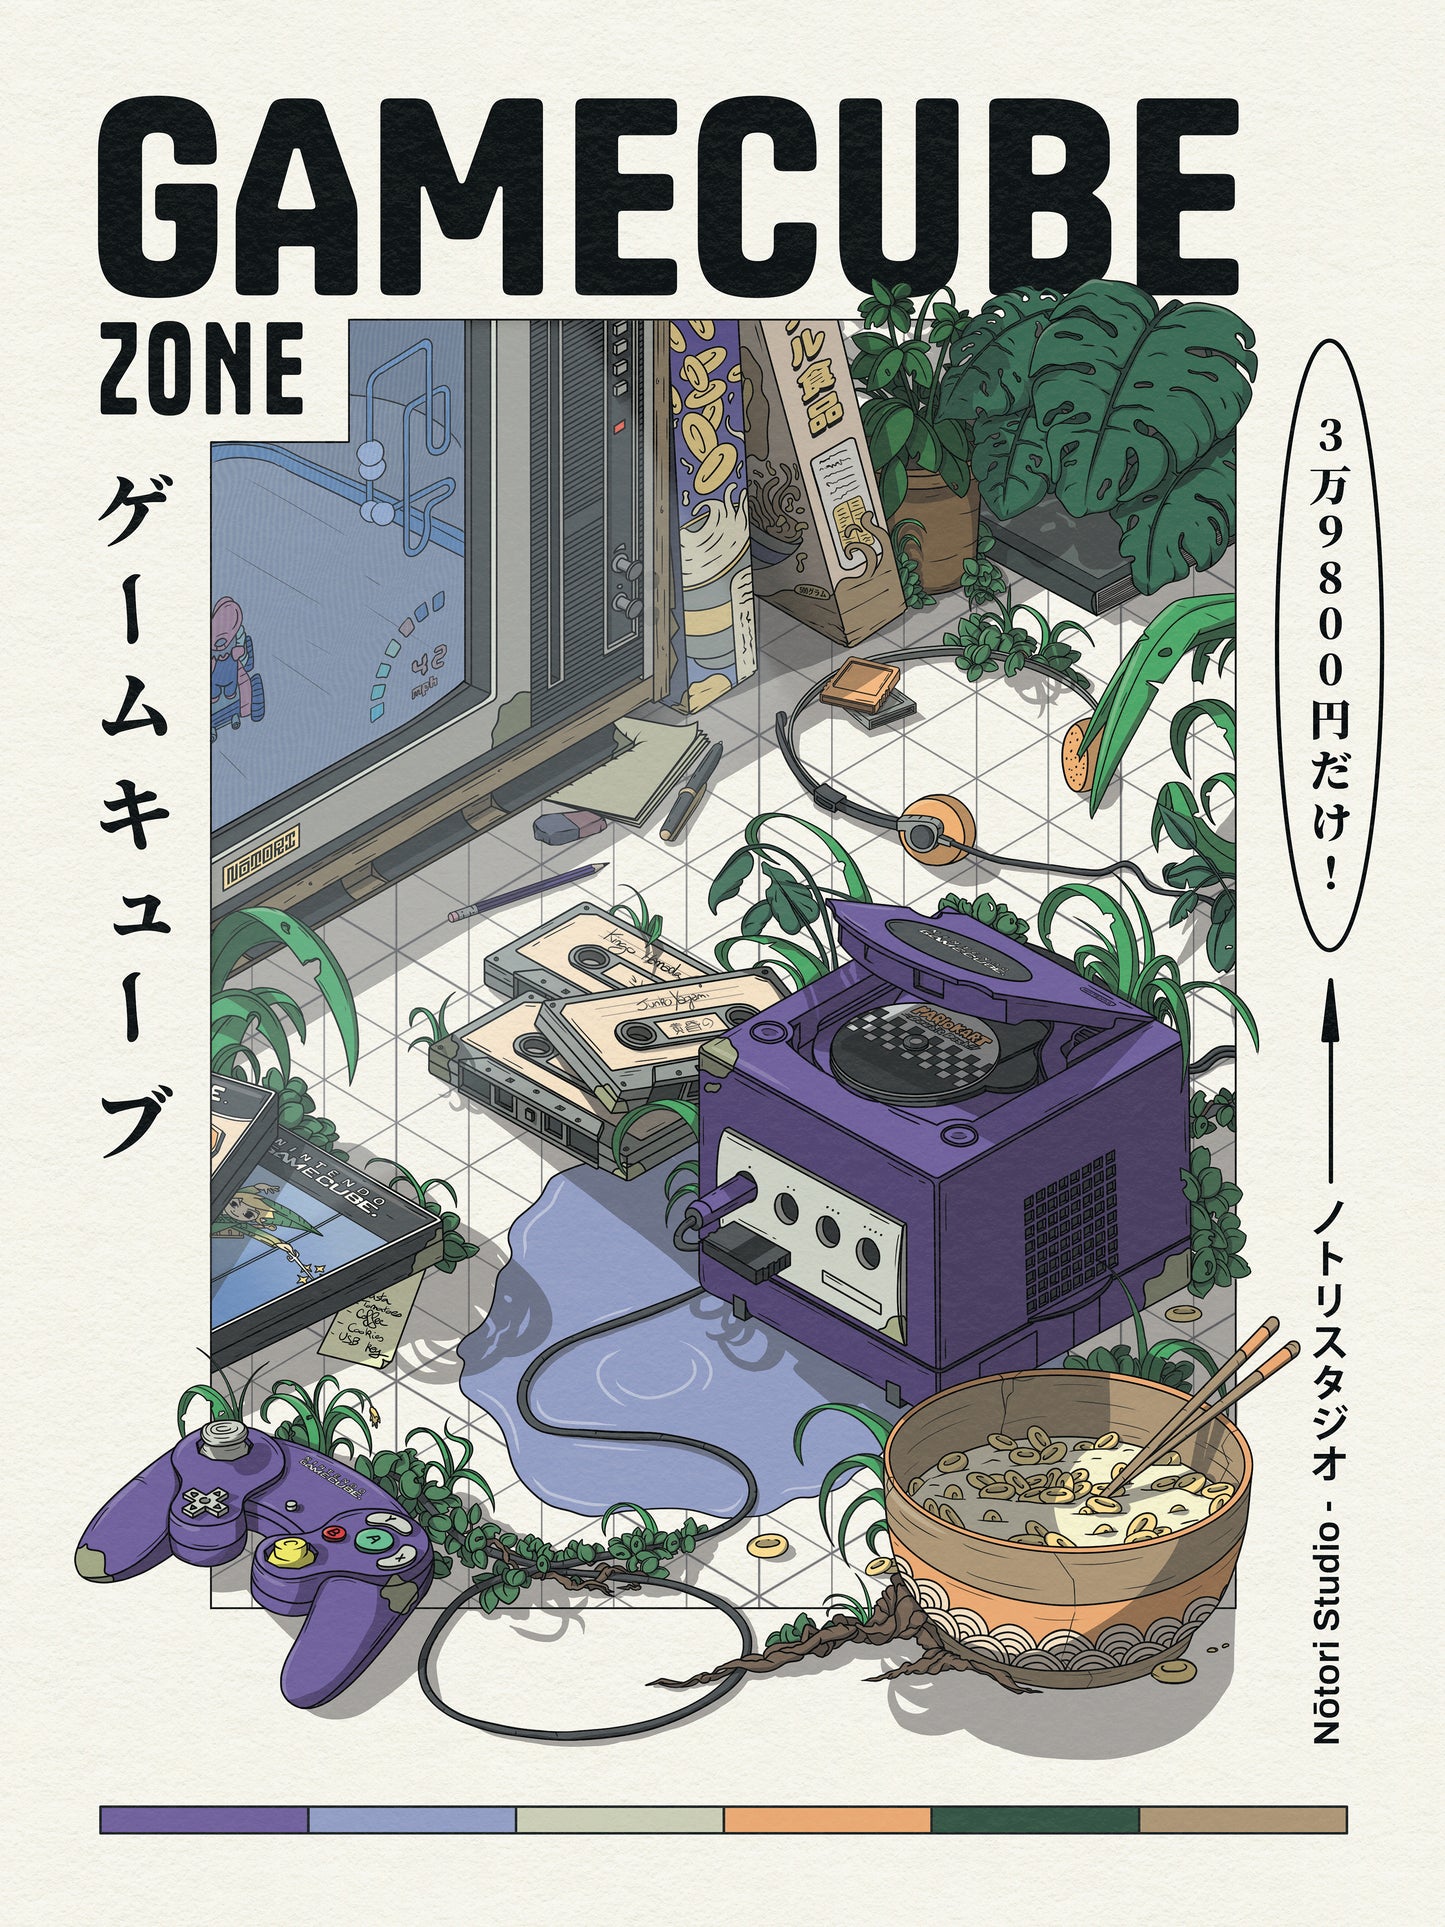 GameCube Zone 30x40